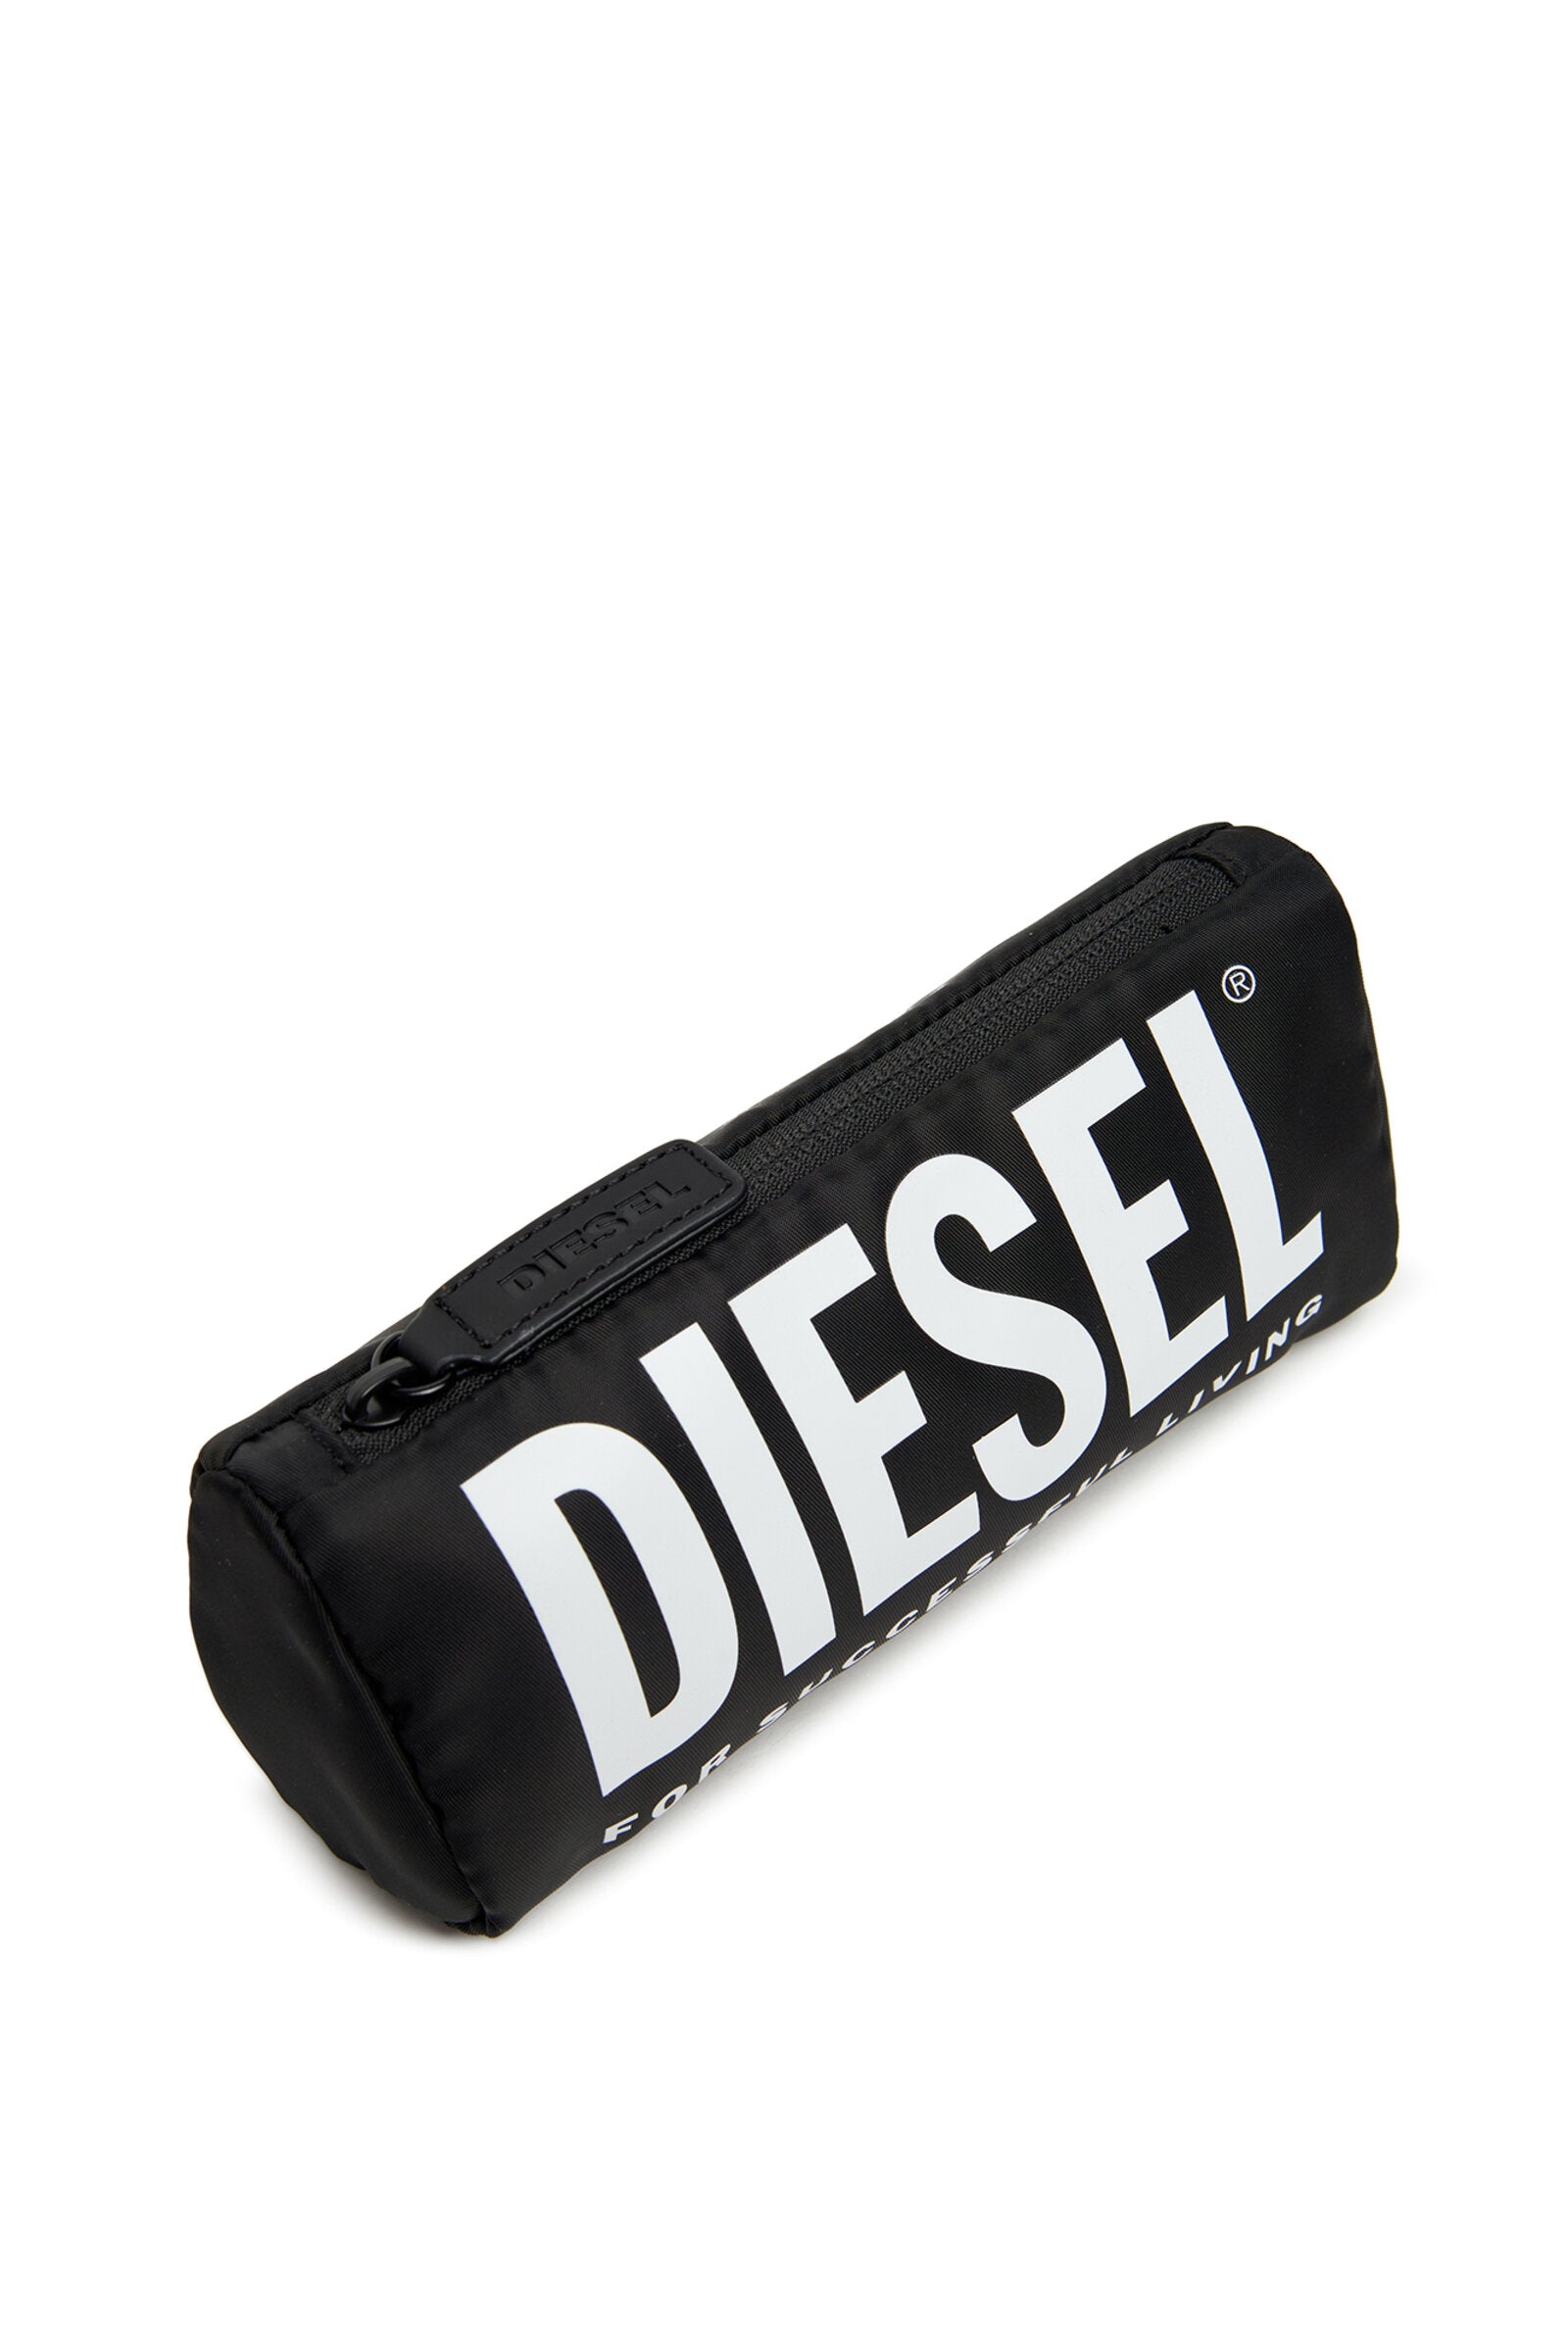 Astuccio Diesel nero in nylon con chiusura a zip